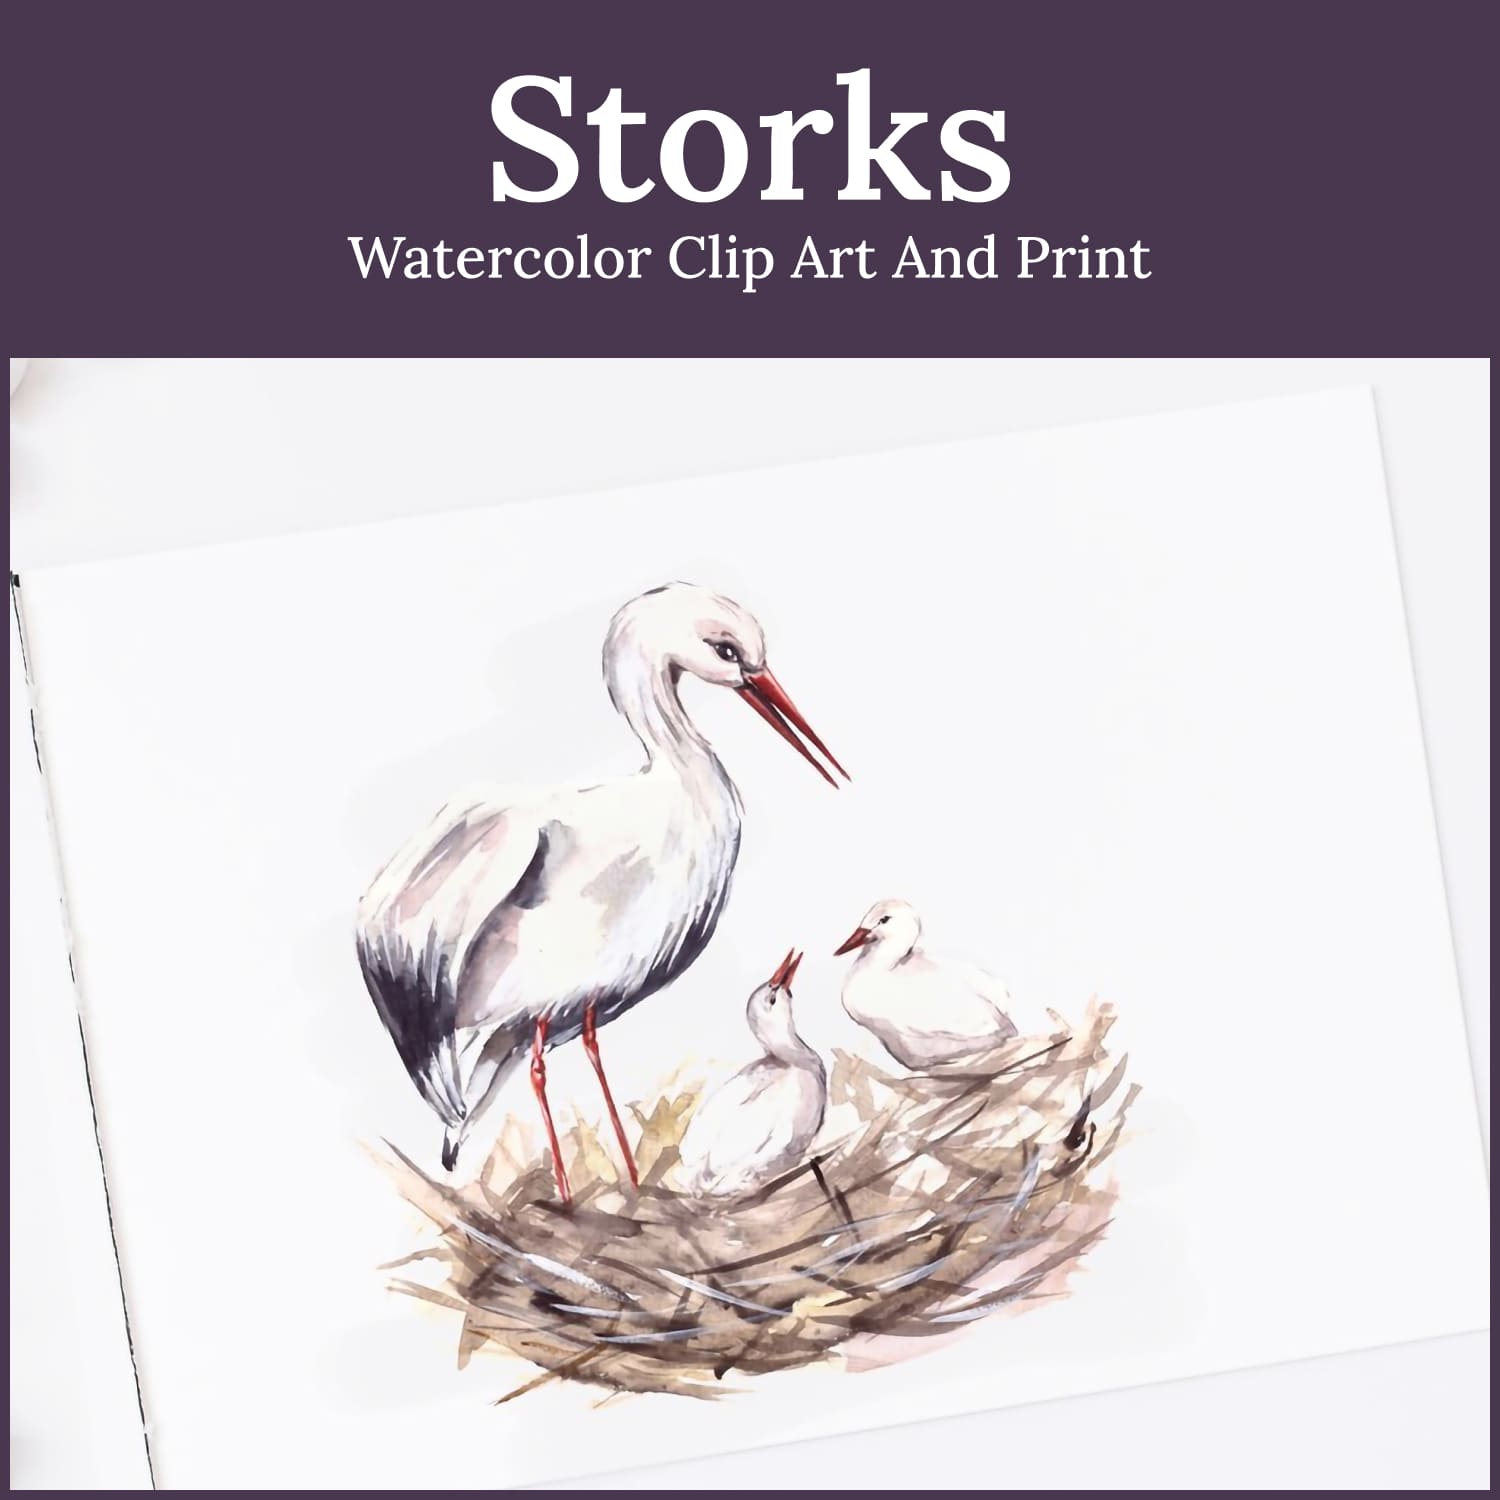 stork bird clipart